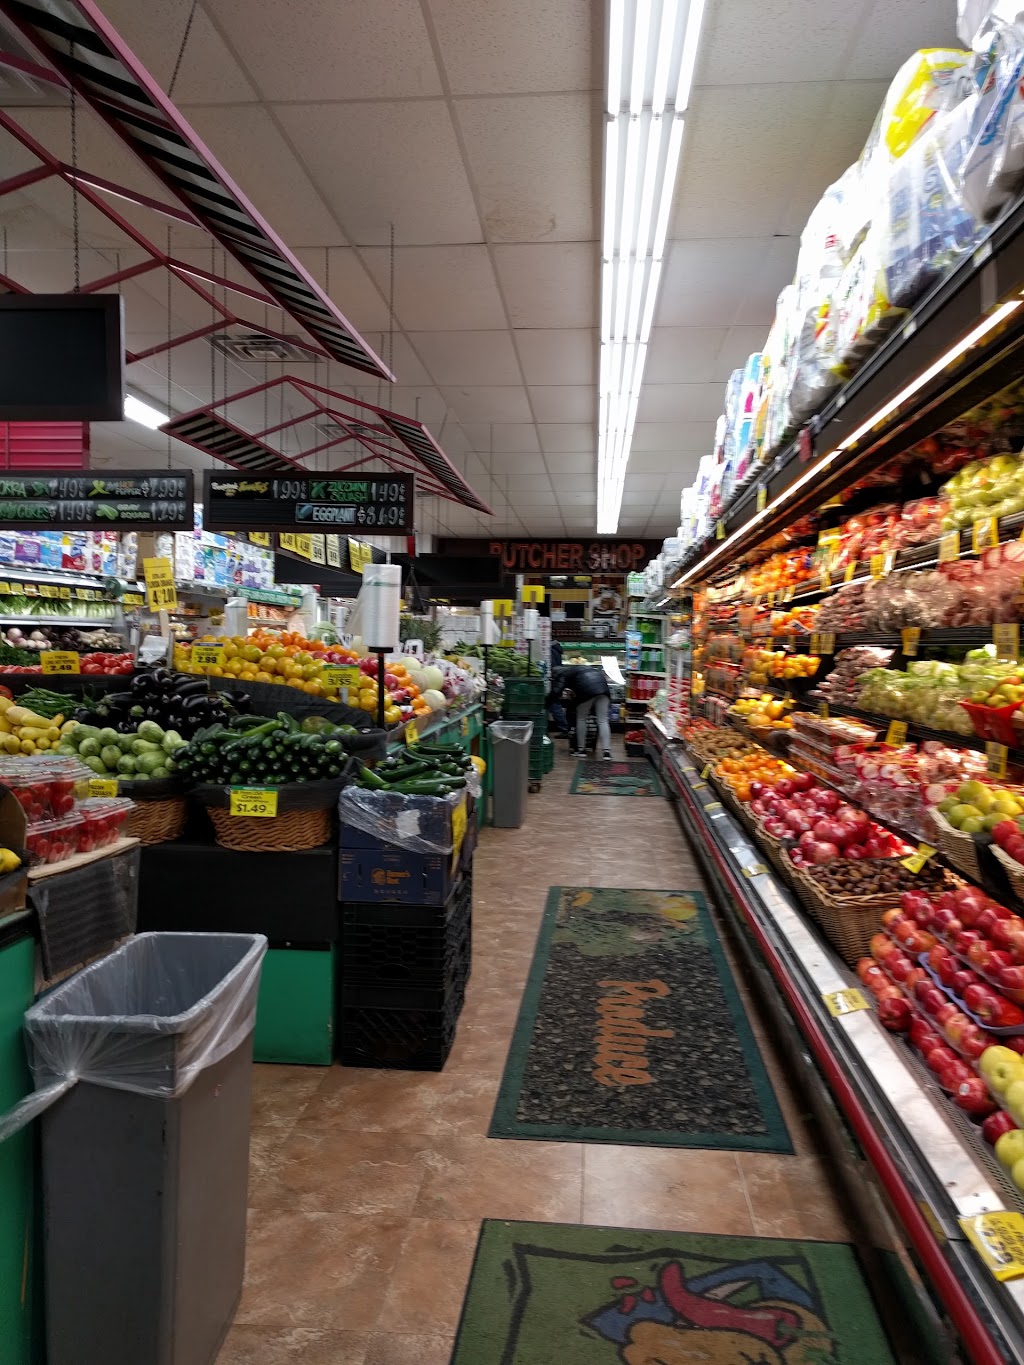 Trade Fair Supermarket | 37-11 Ditmars Blvd, Queens, NY 11105 | Phone: (718) 274-1085